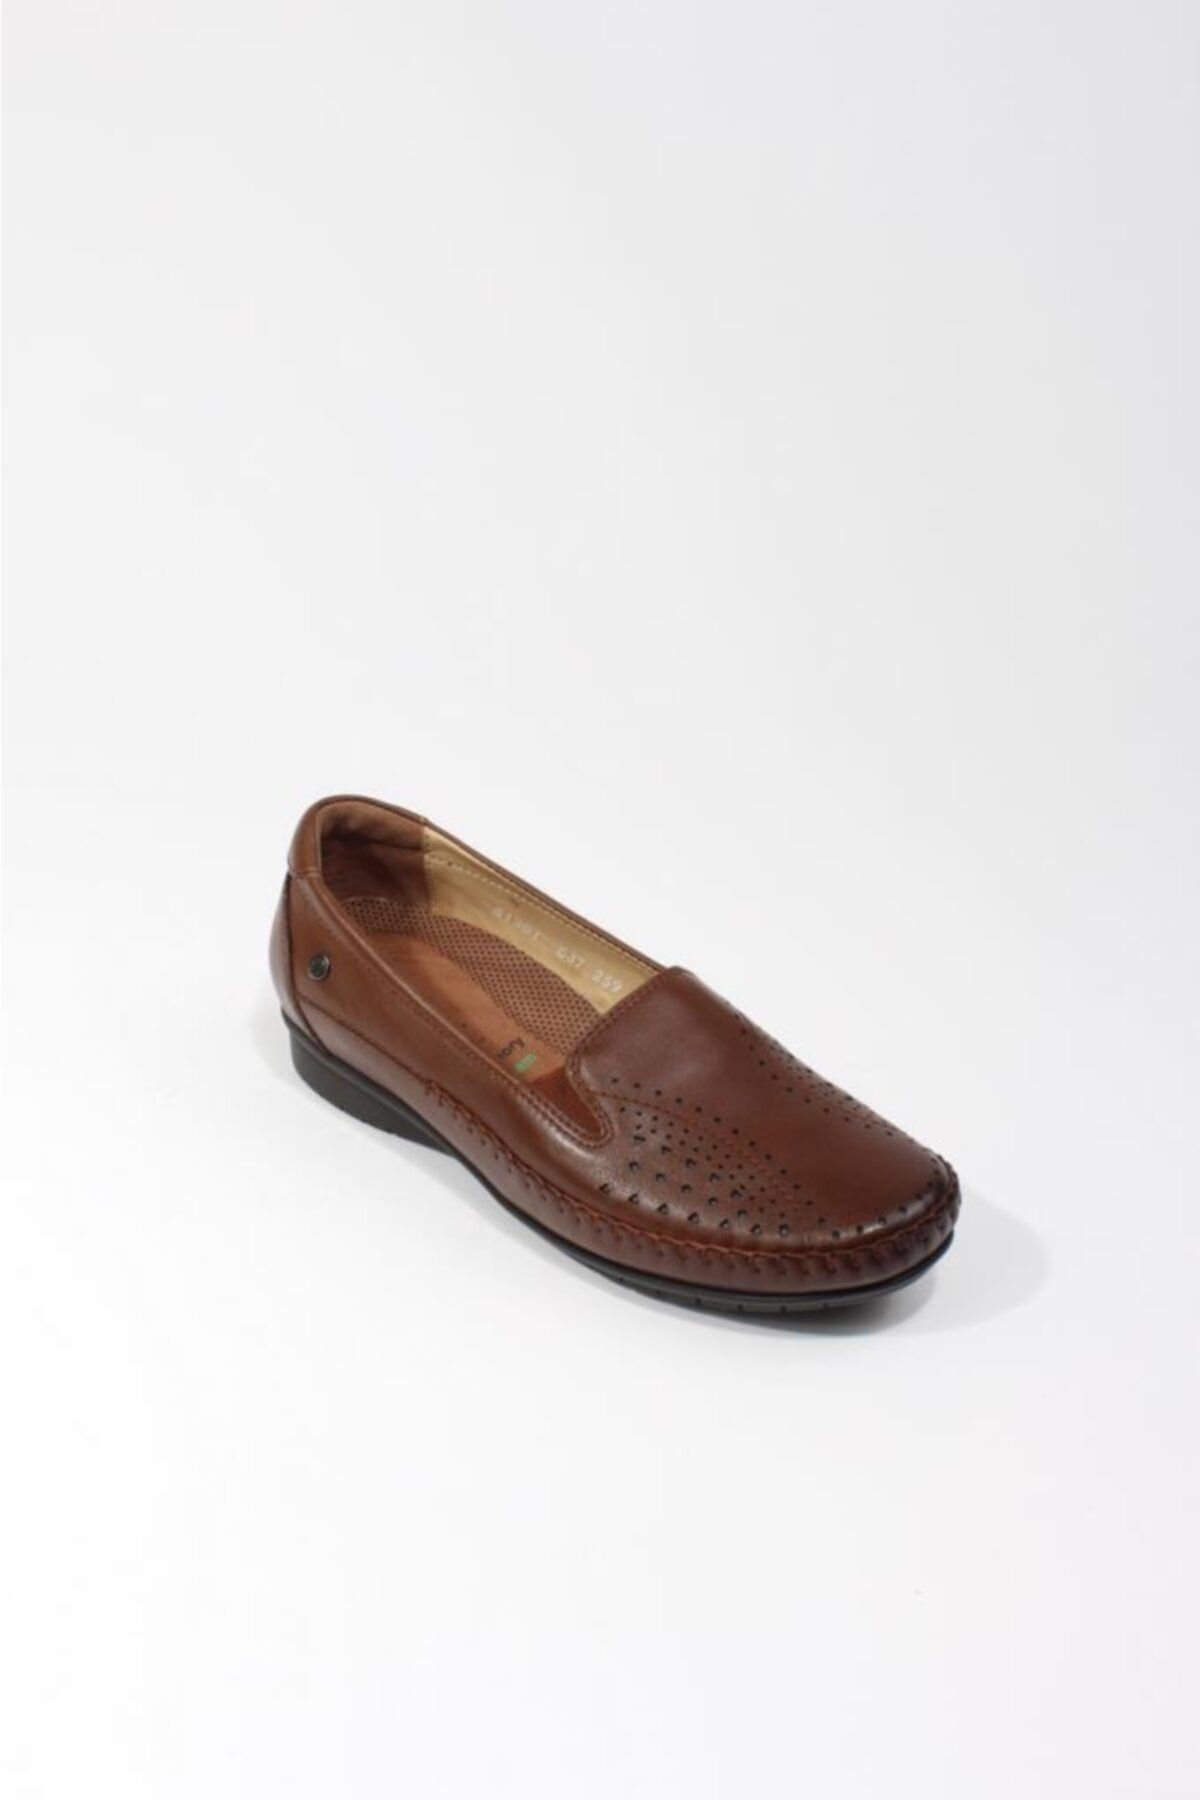 Forelli 51301-g Comfort Kadın Ayakkabı Taba